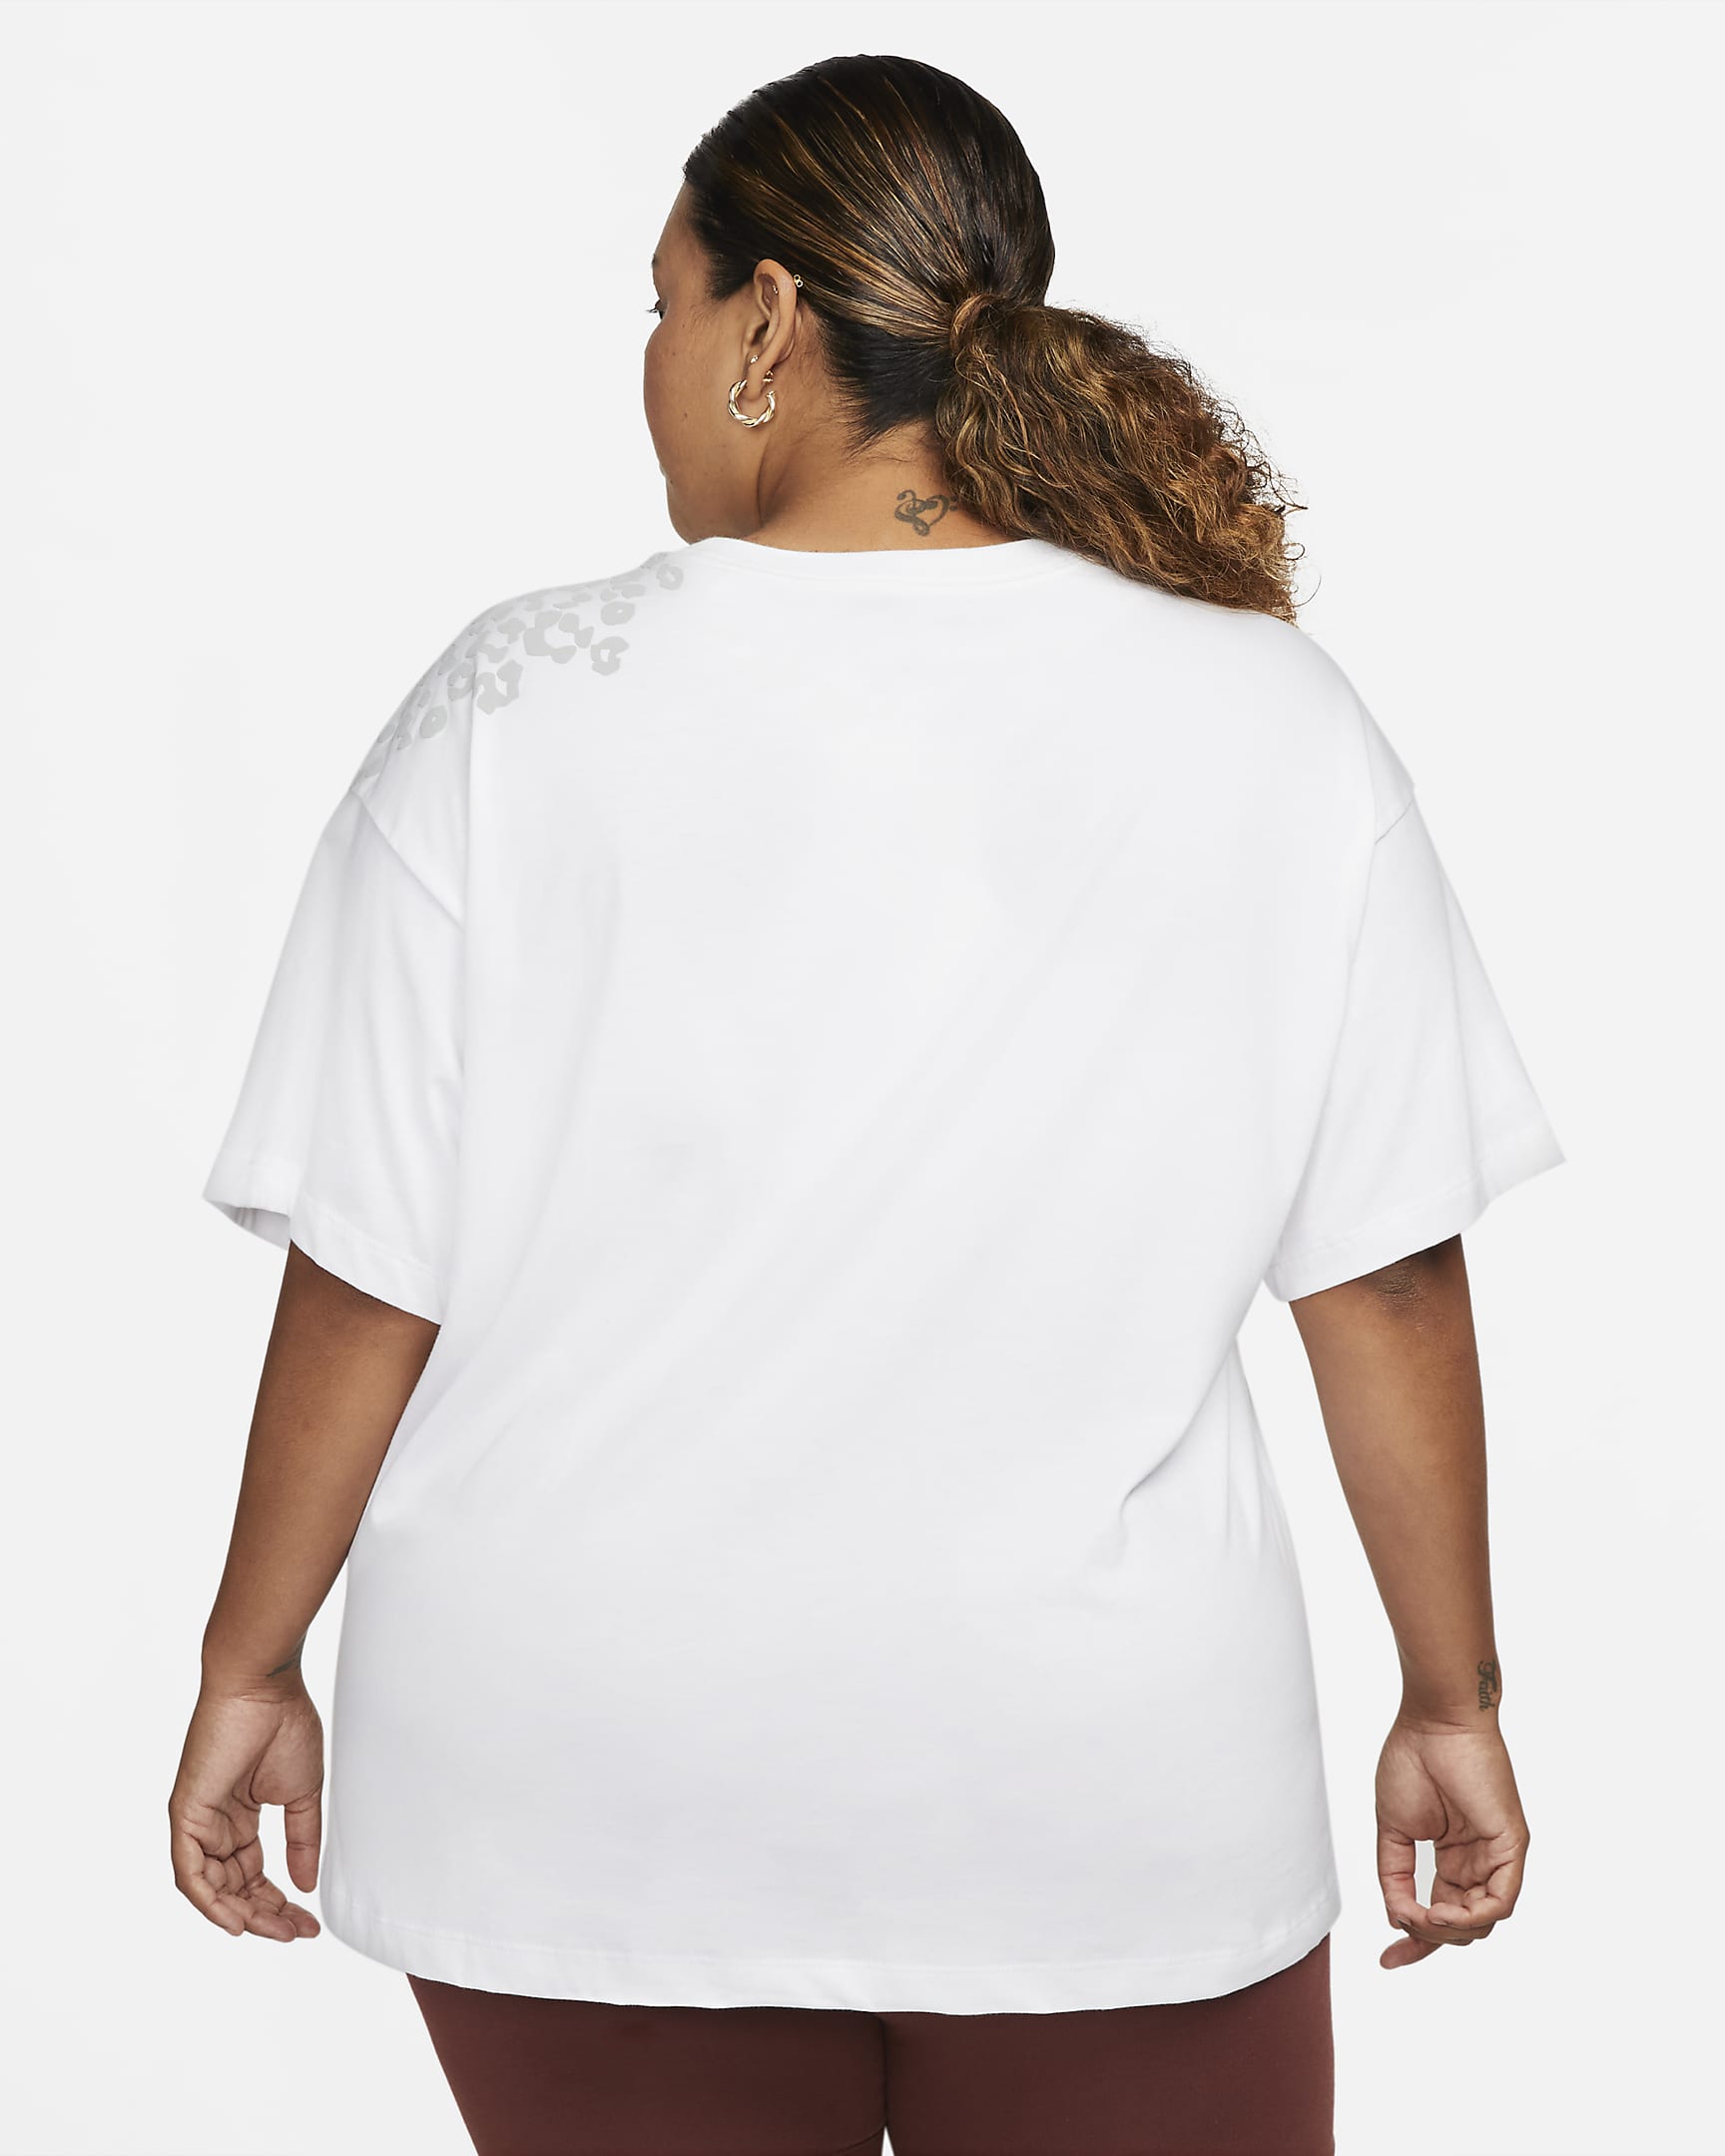 Nike Sportswear Women’s Boyfriend Fit T-Shirt (Plus Size). Nike.com